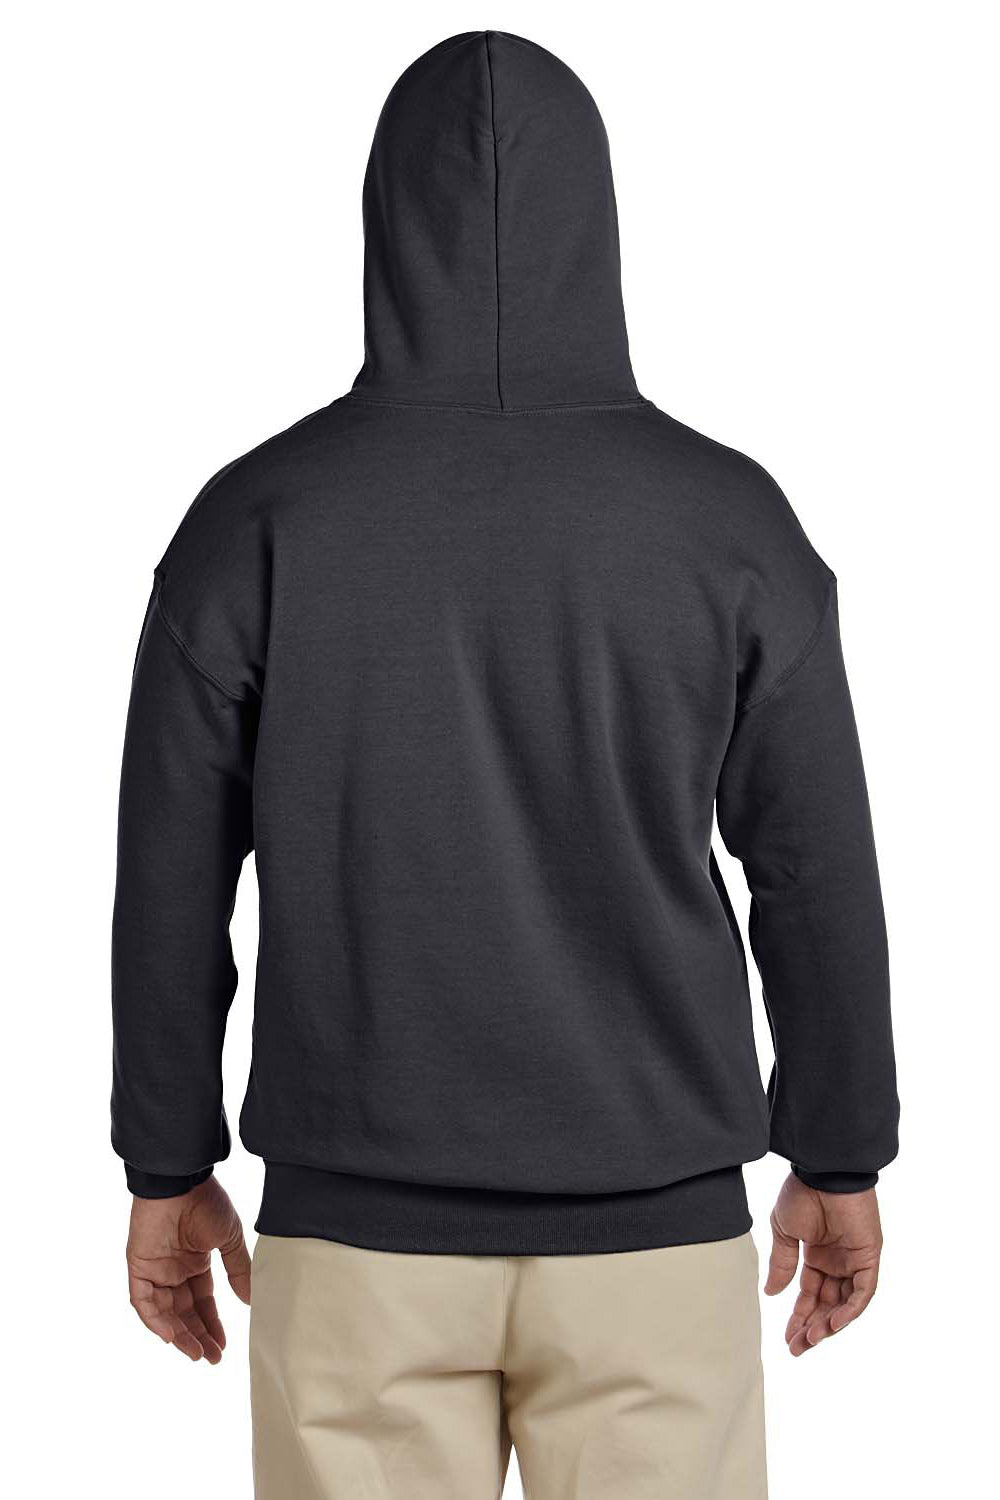 Gildan G185 Mens Hooded Sweatshirt Hoodie Charcoal Grey Back